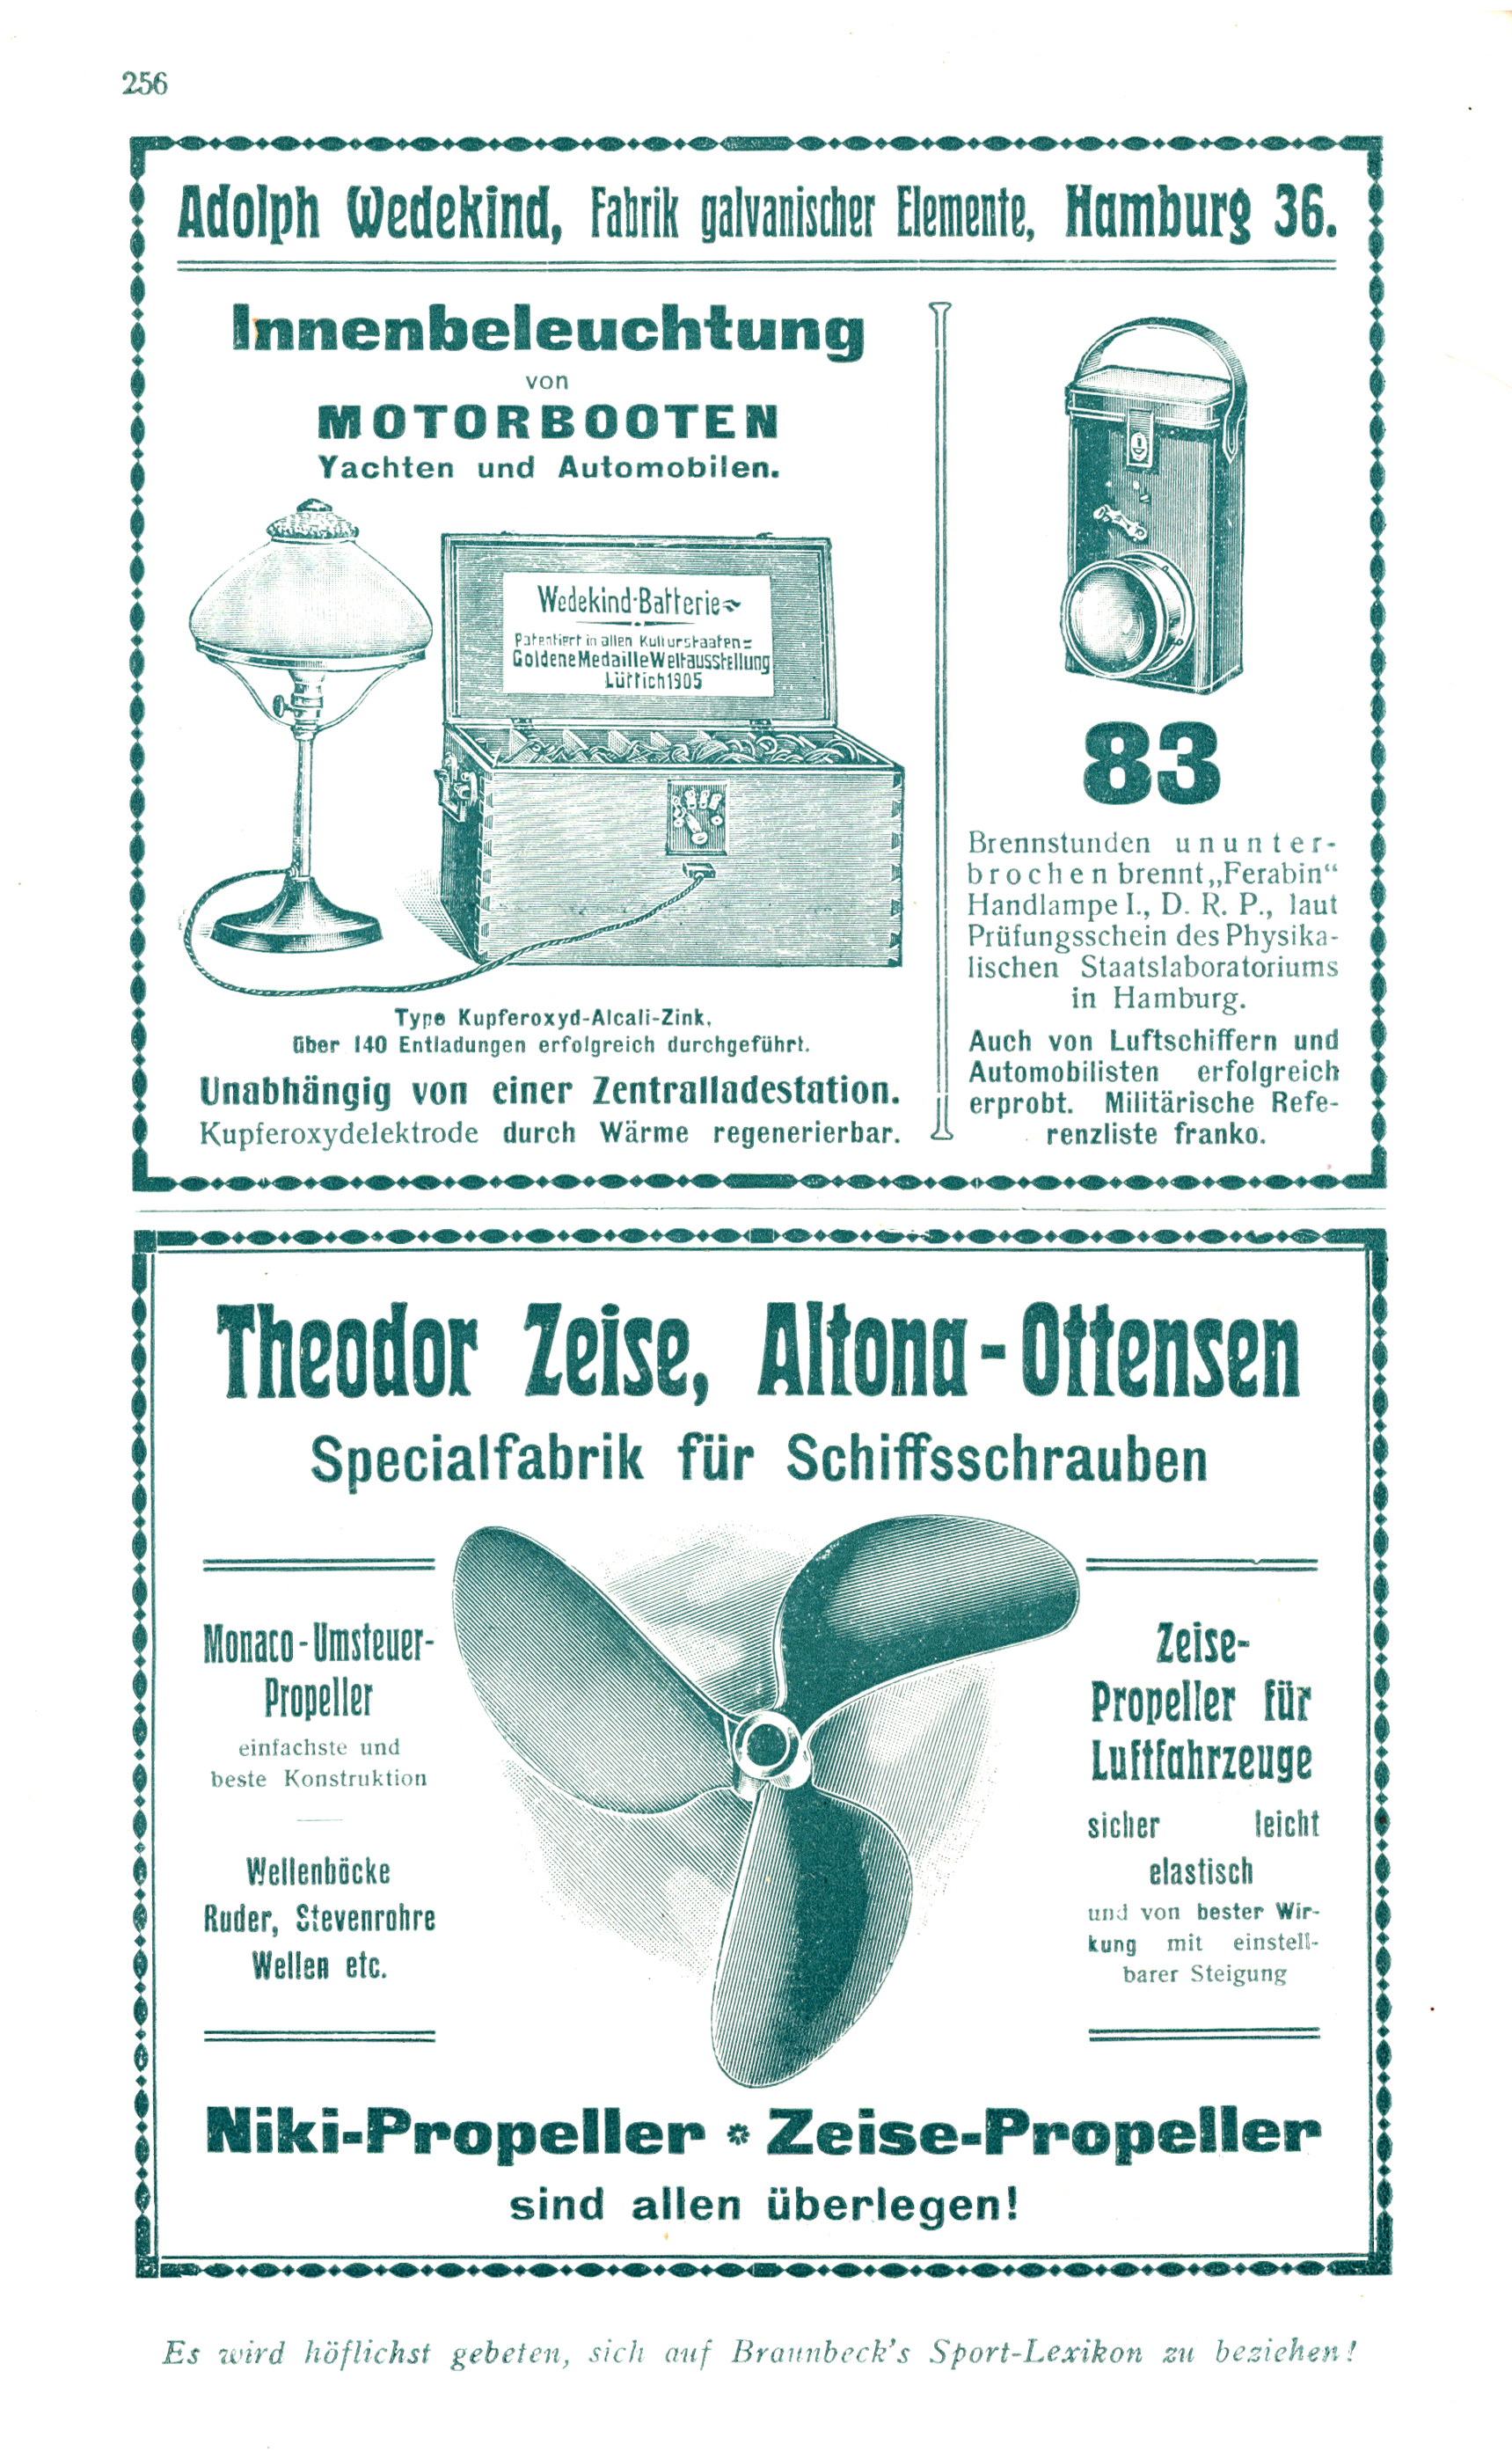 Beispiele für Werbeanzeigen: Adolph Wedekind - Fabrik galvanischer Elemente und Theodor Zeise - Spezialfabrik für Schiffsschrauben